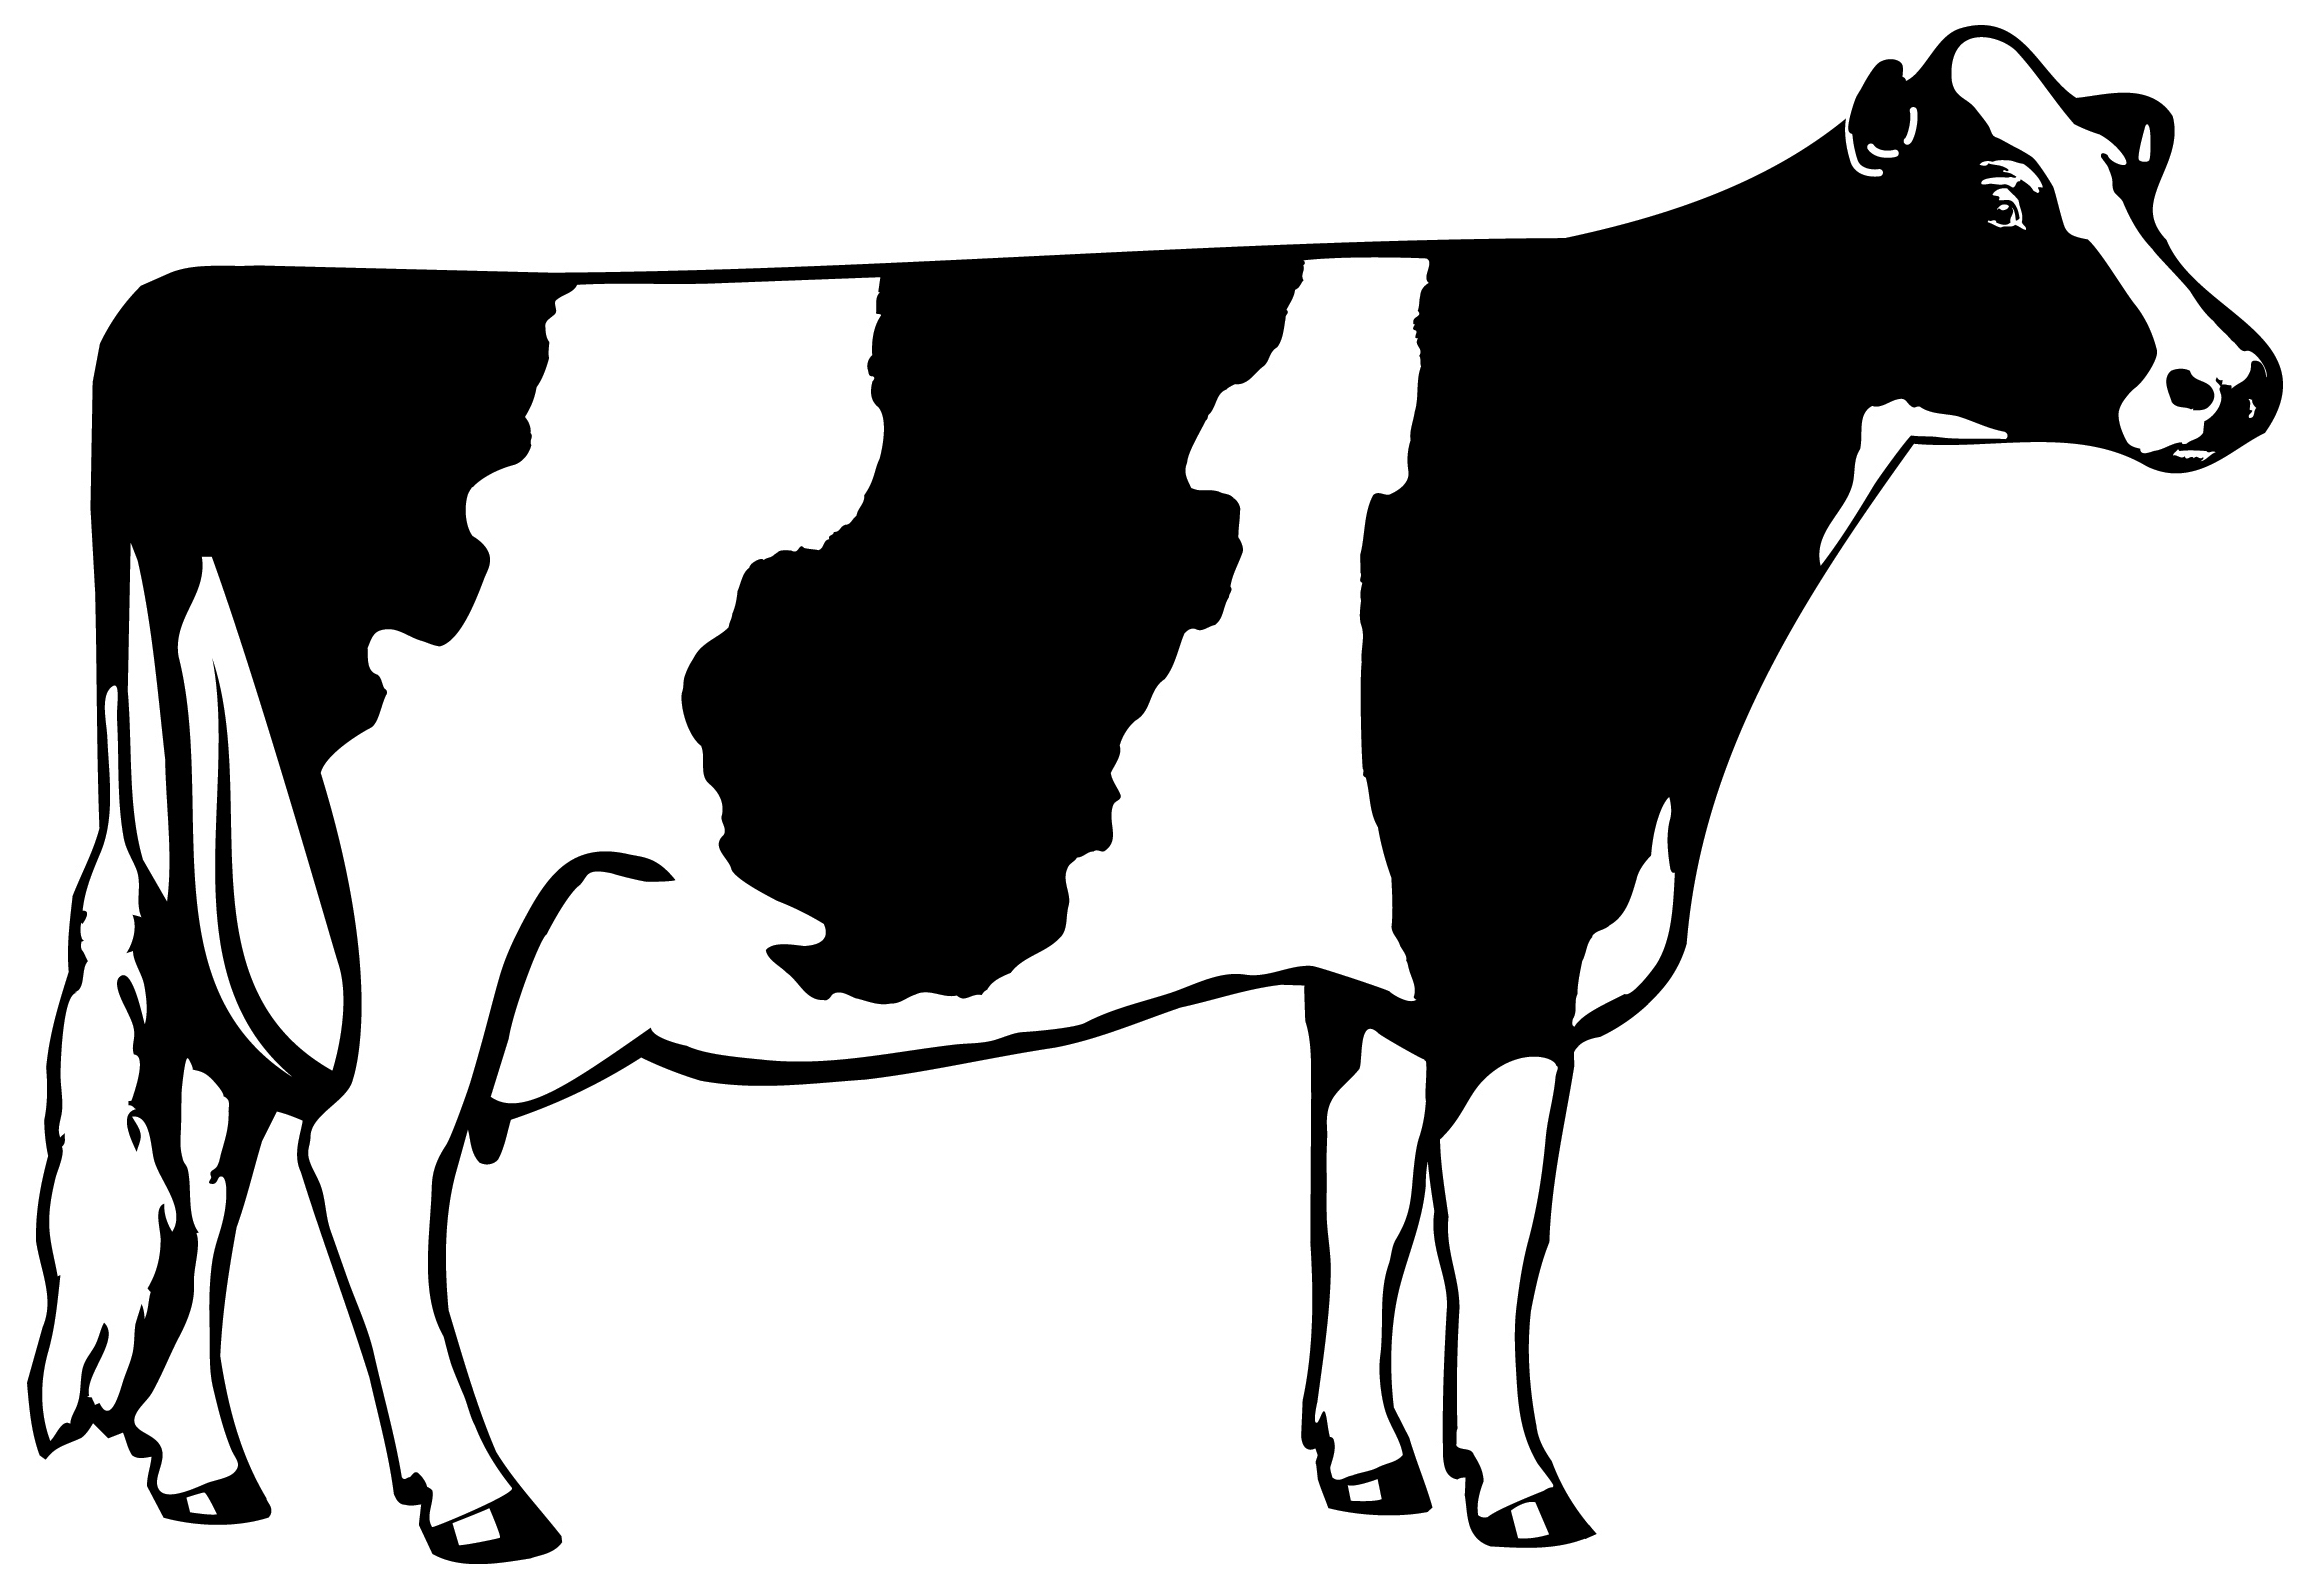 cow silhouette clip art. 9d62